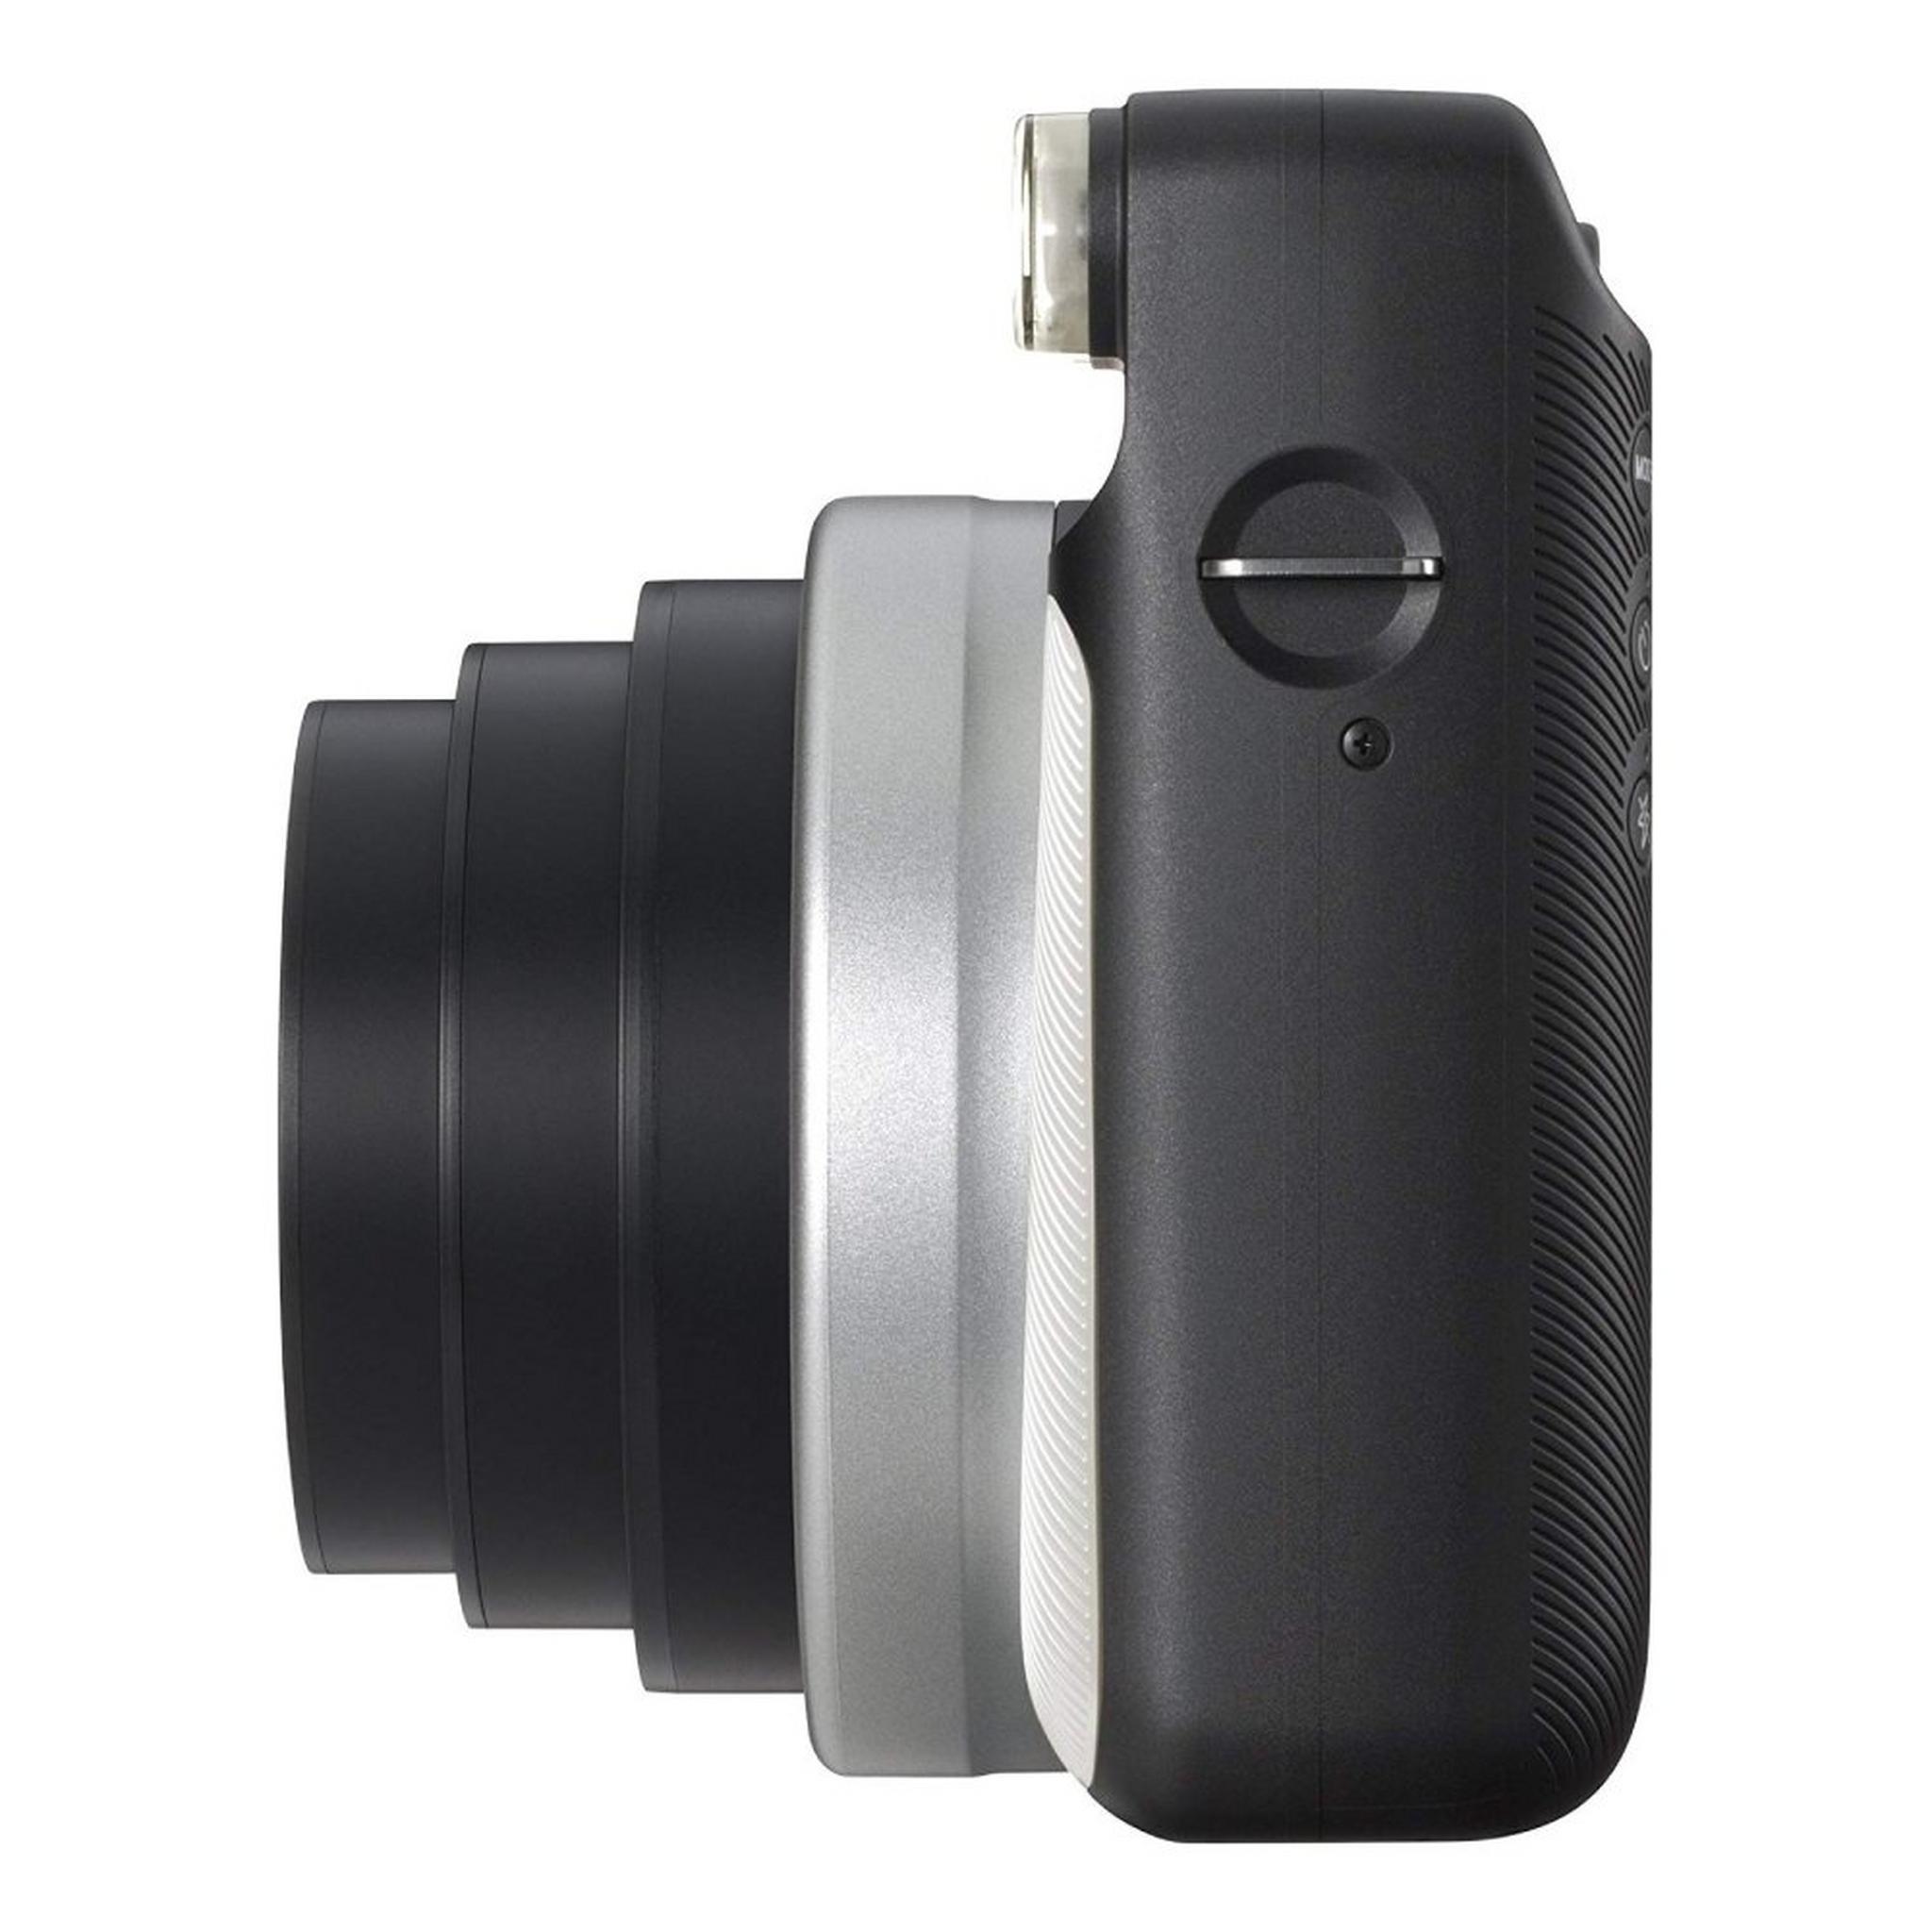 Fujifilm Instax Square SQ6 Instant Film Camera - Pearl White